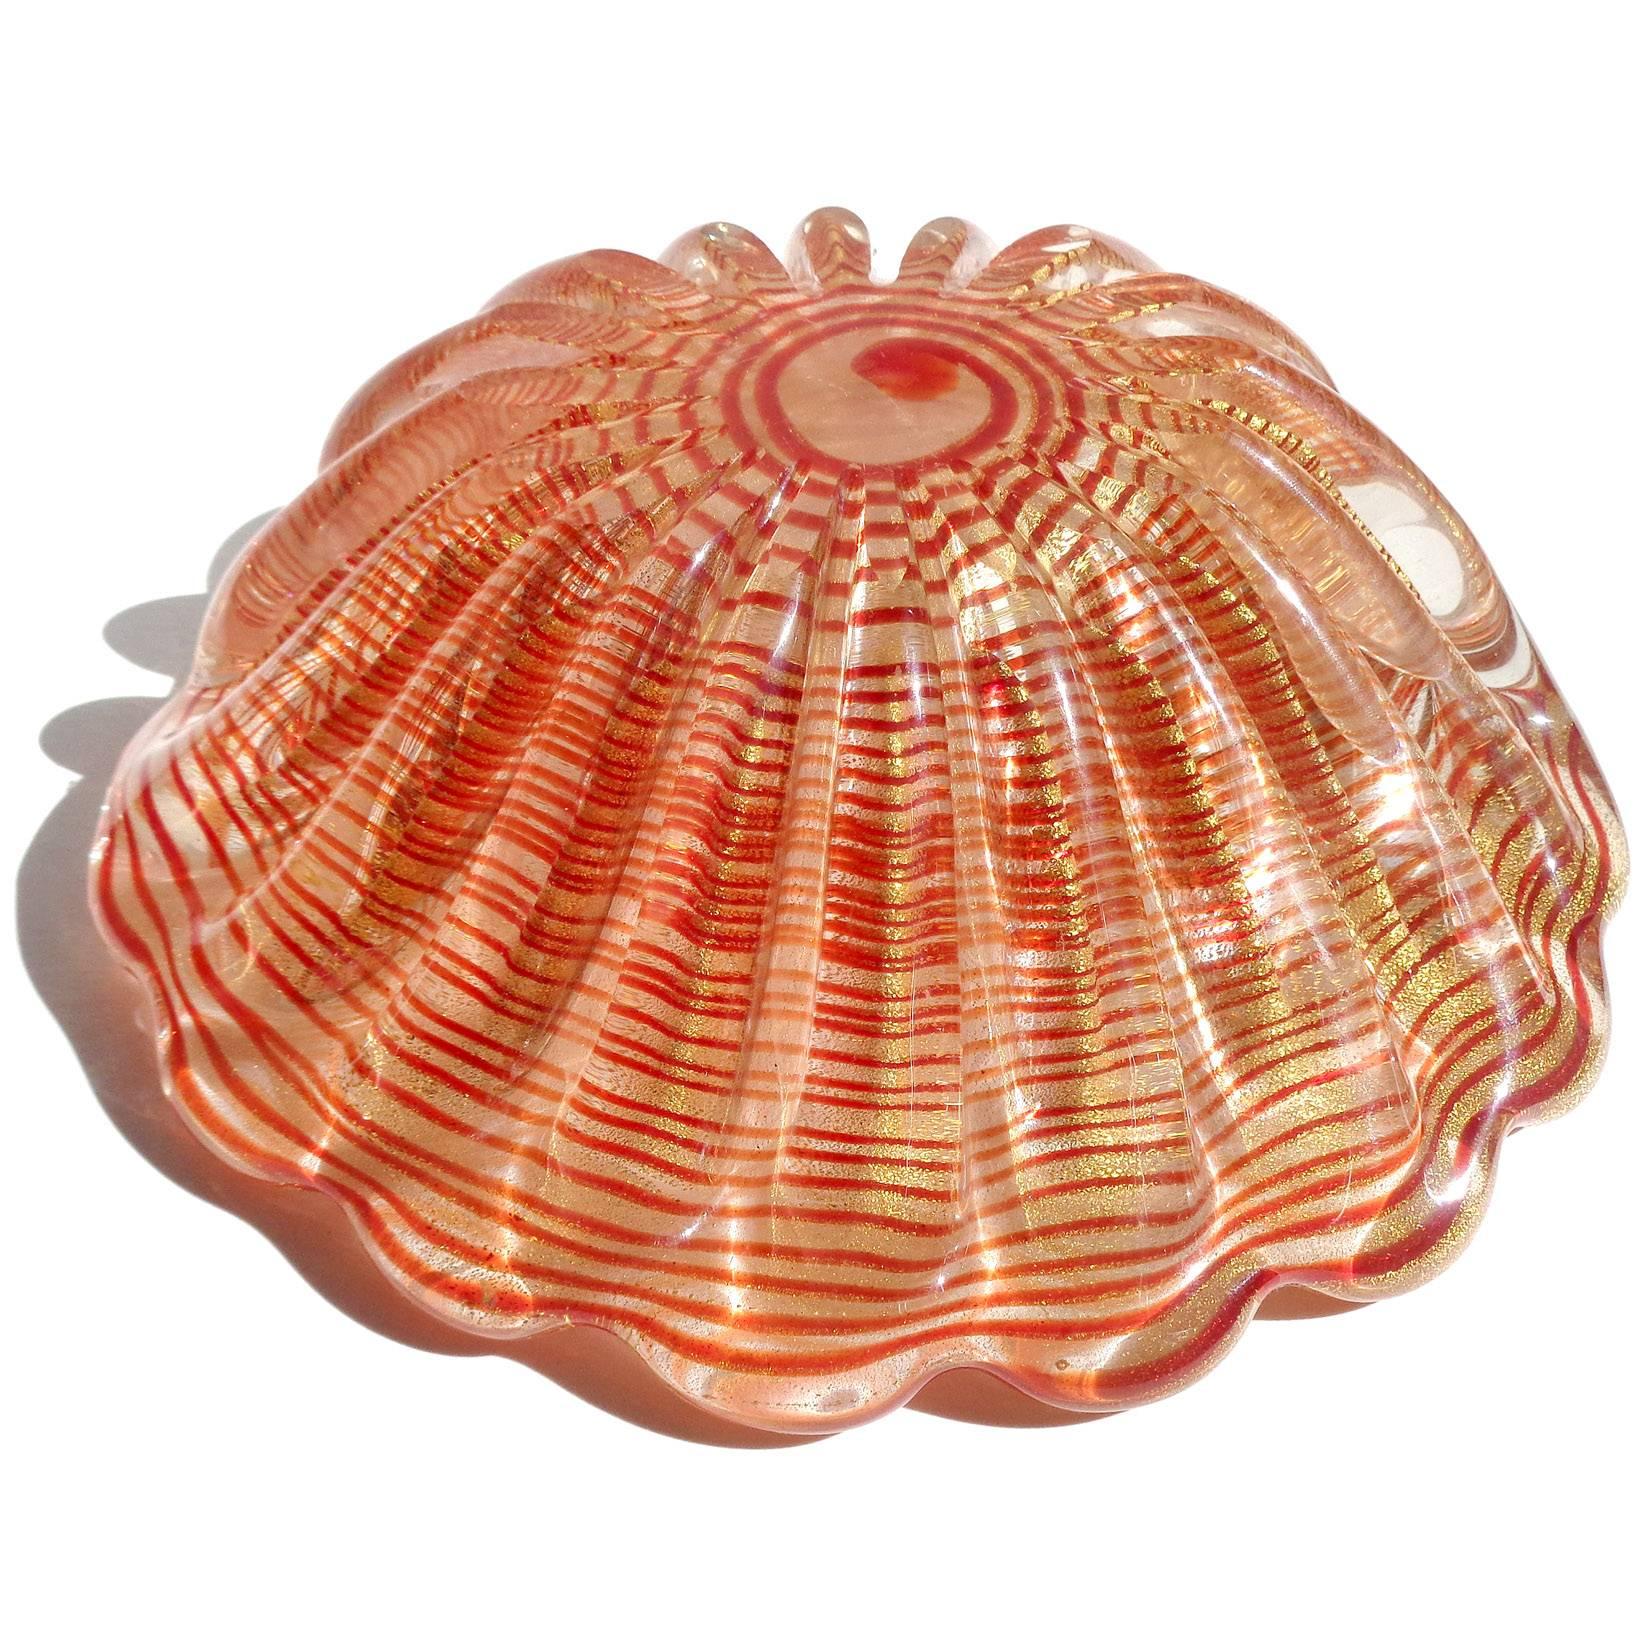 Hand-Crafted Barovier Toso Murano Red Swirl Gold Flecks Italian Art Glass Seashell Bowl